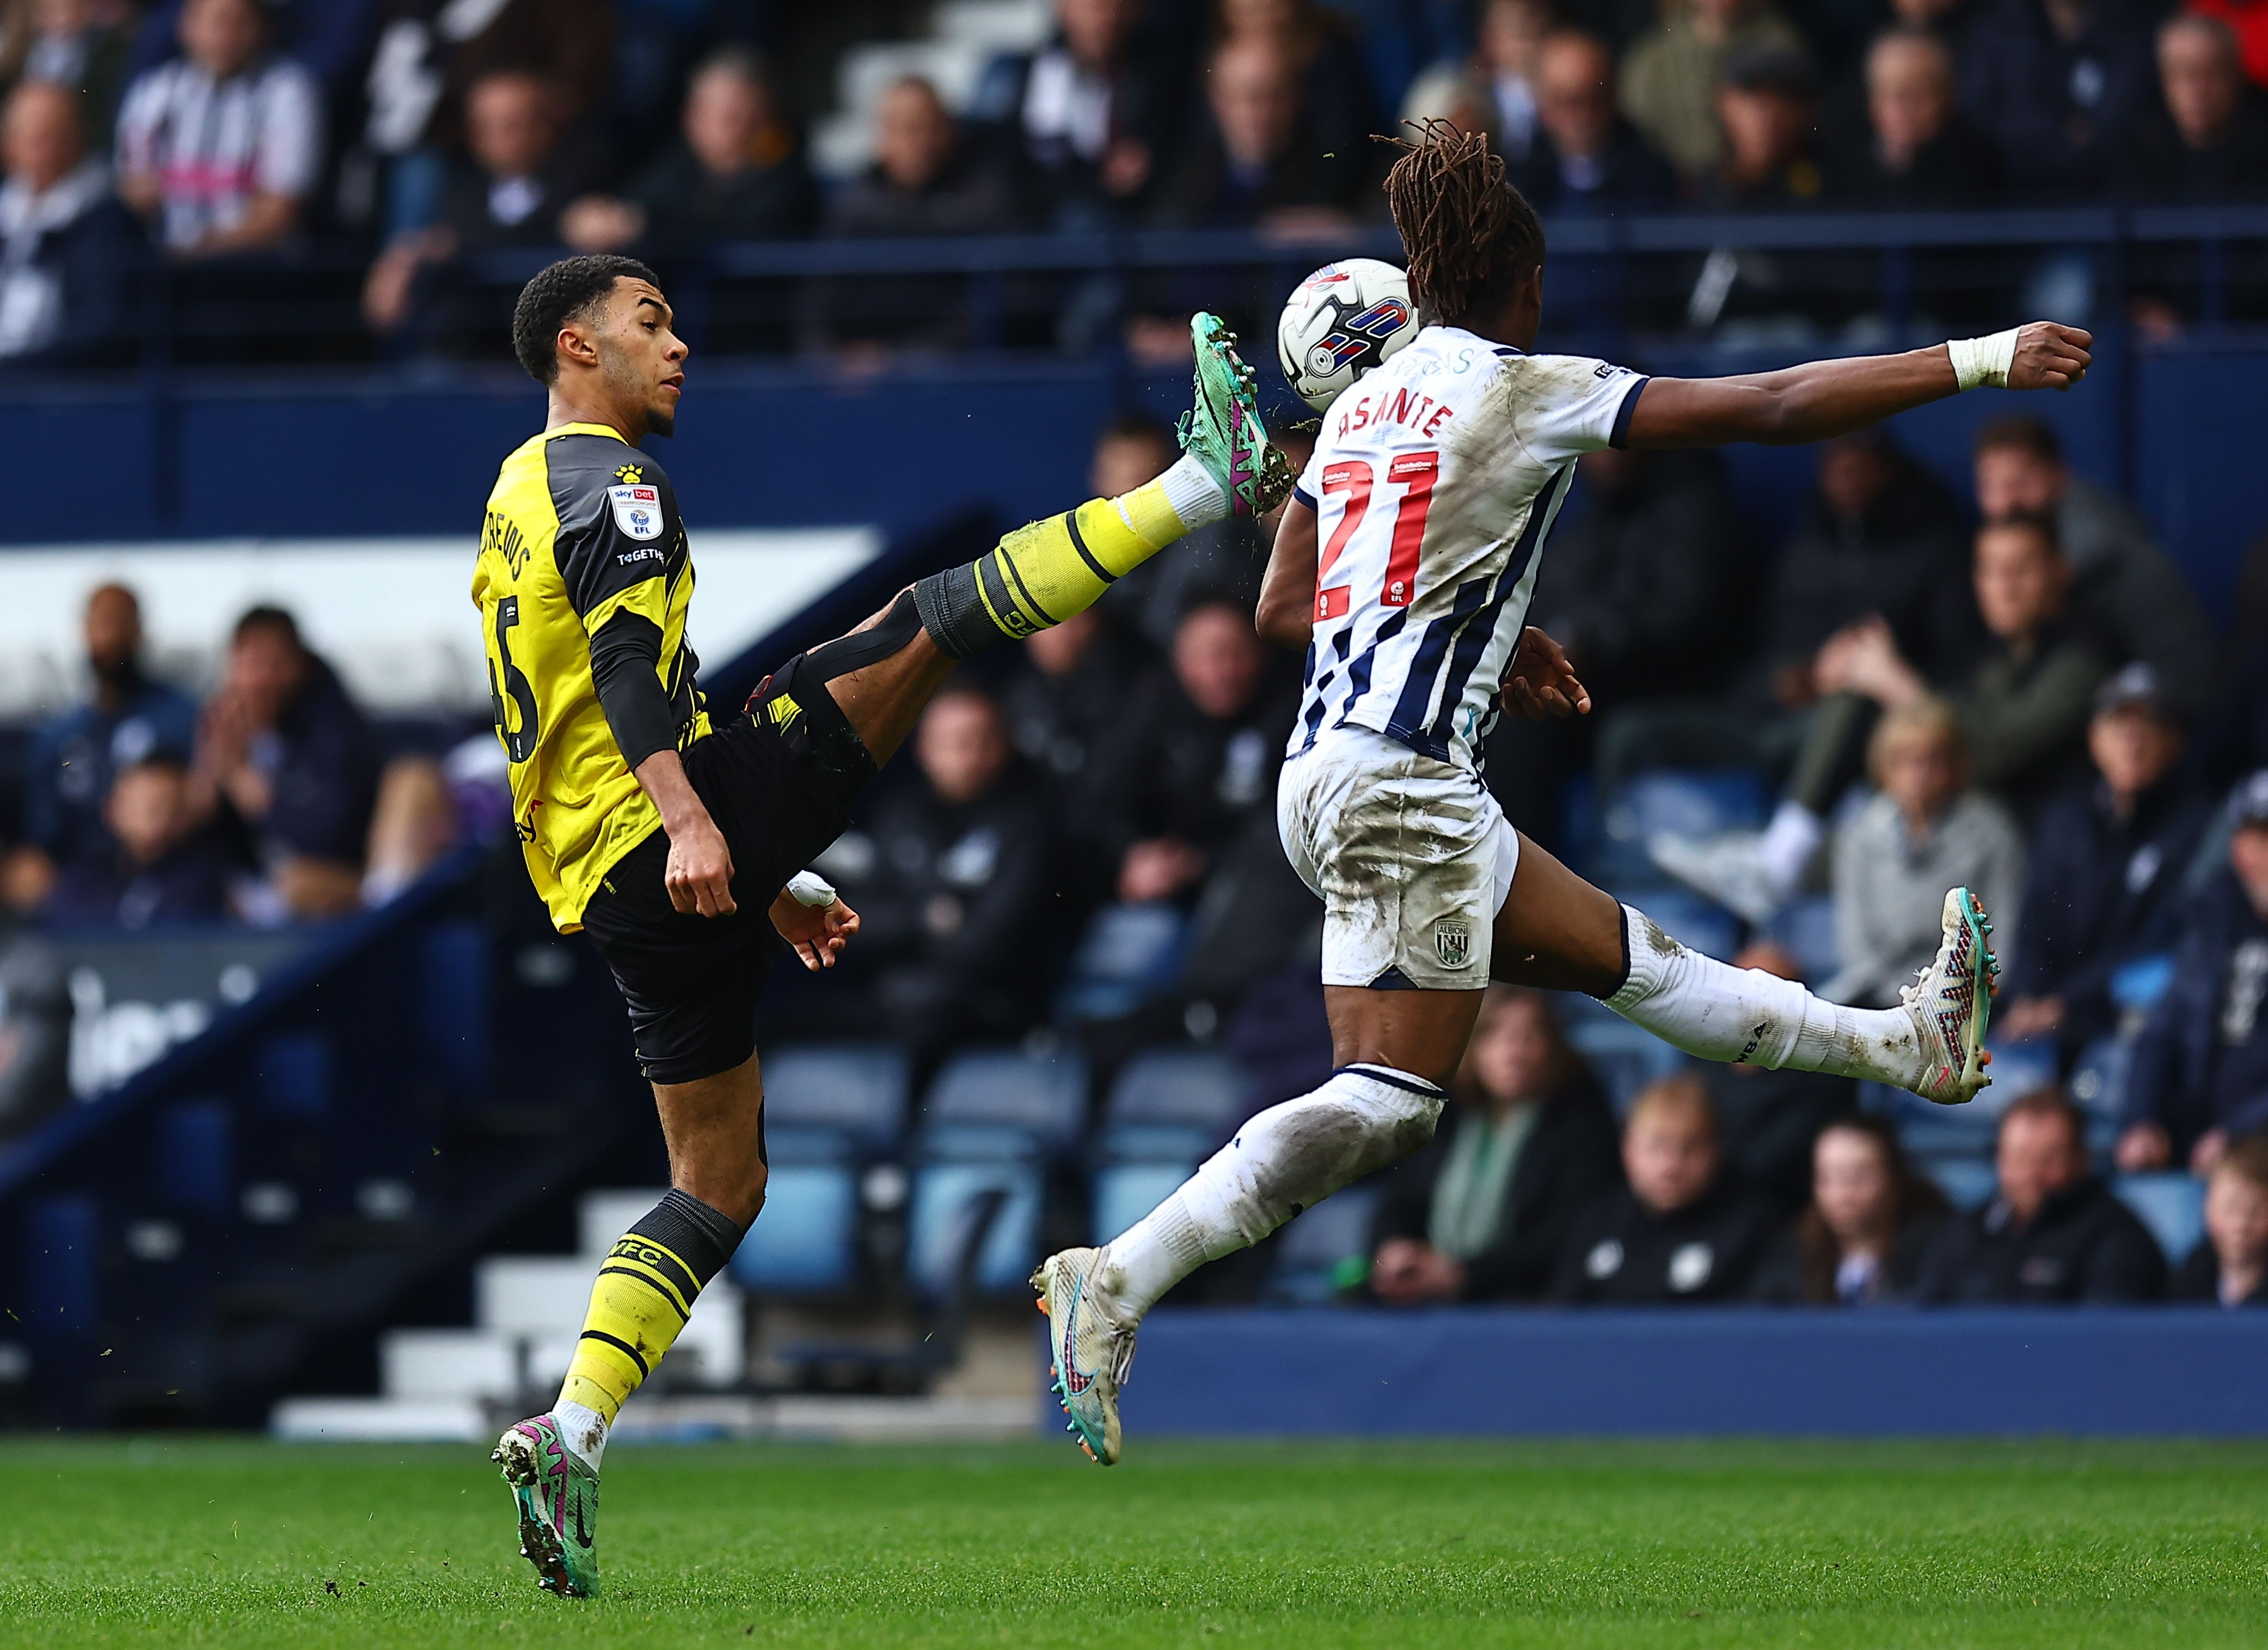 Brandon Thomas-Asante jumps for the ball against Watford 